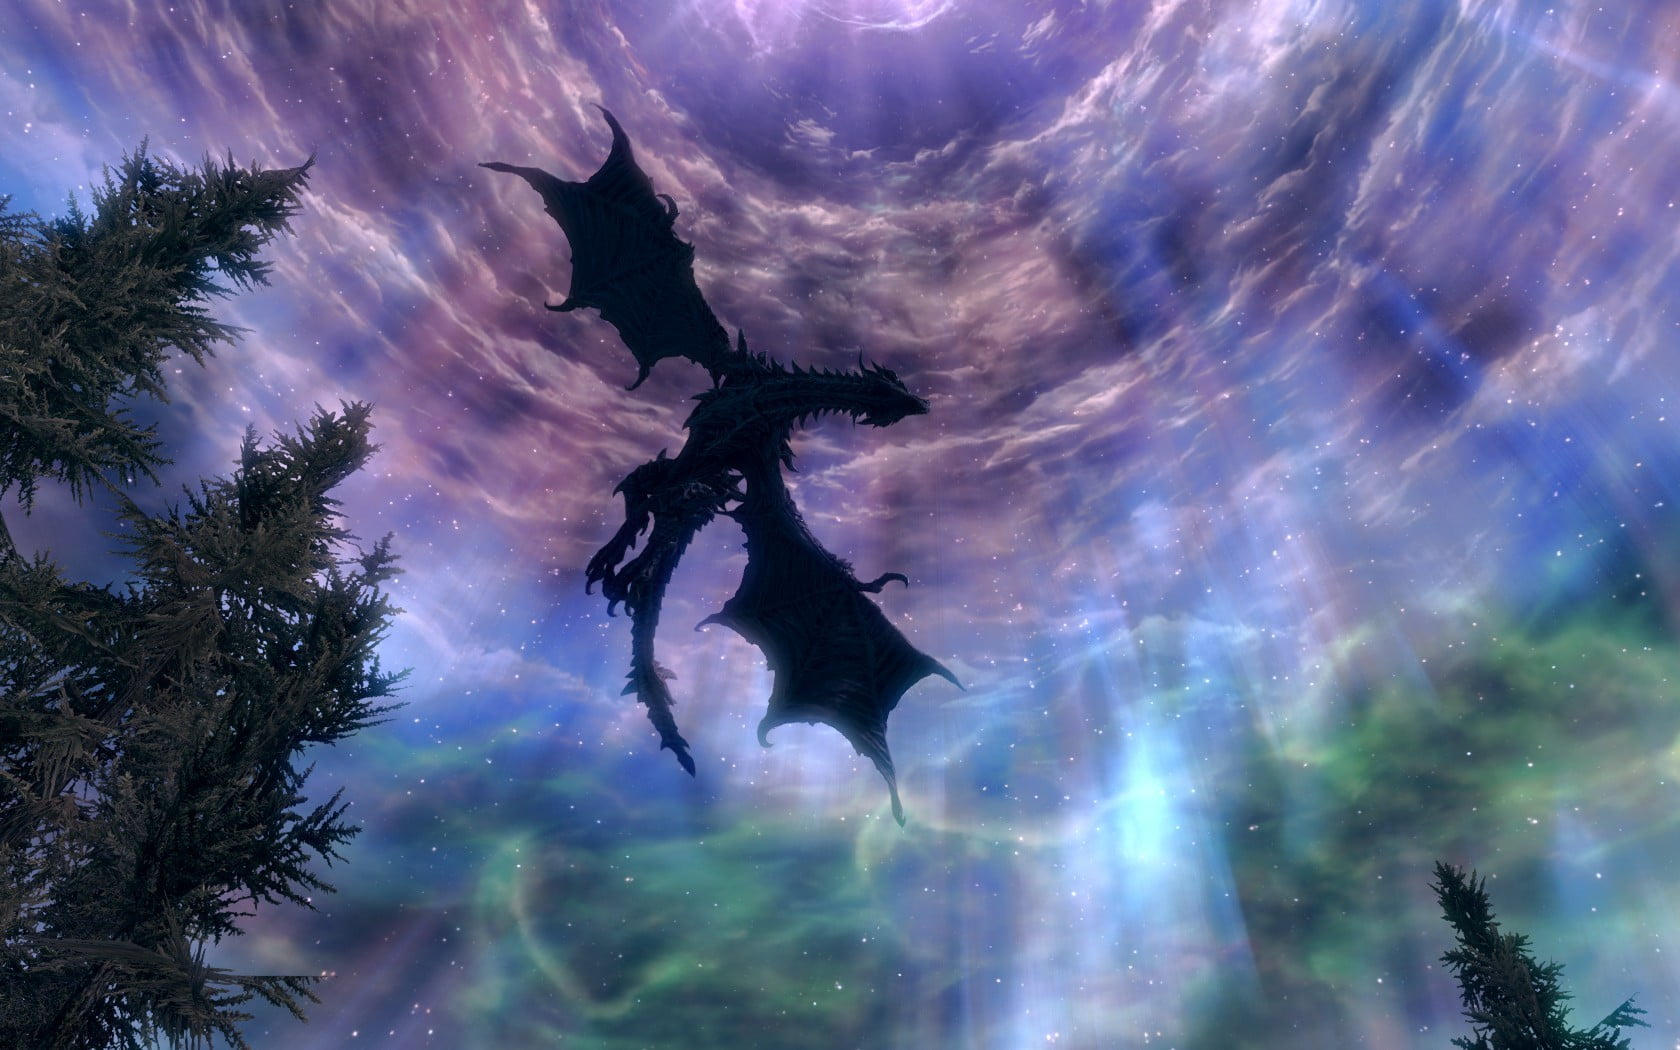 Black Dragon Skyrim - HD Wallpaper 